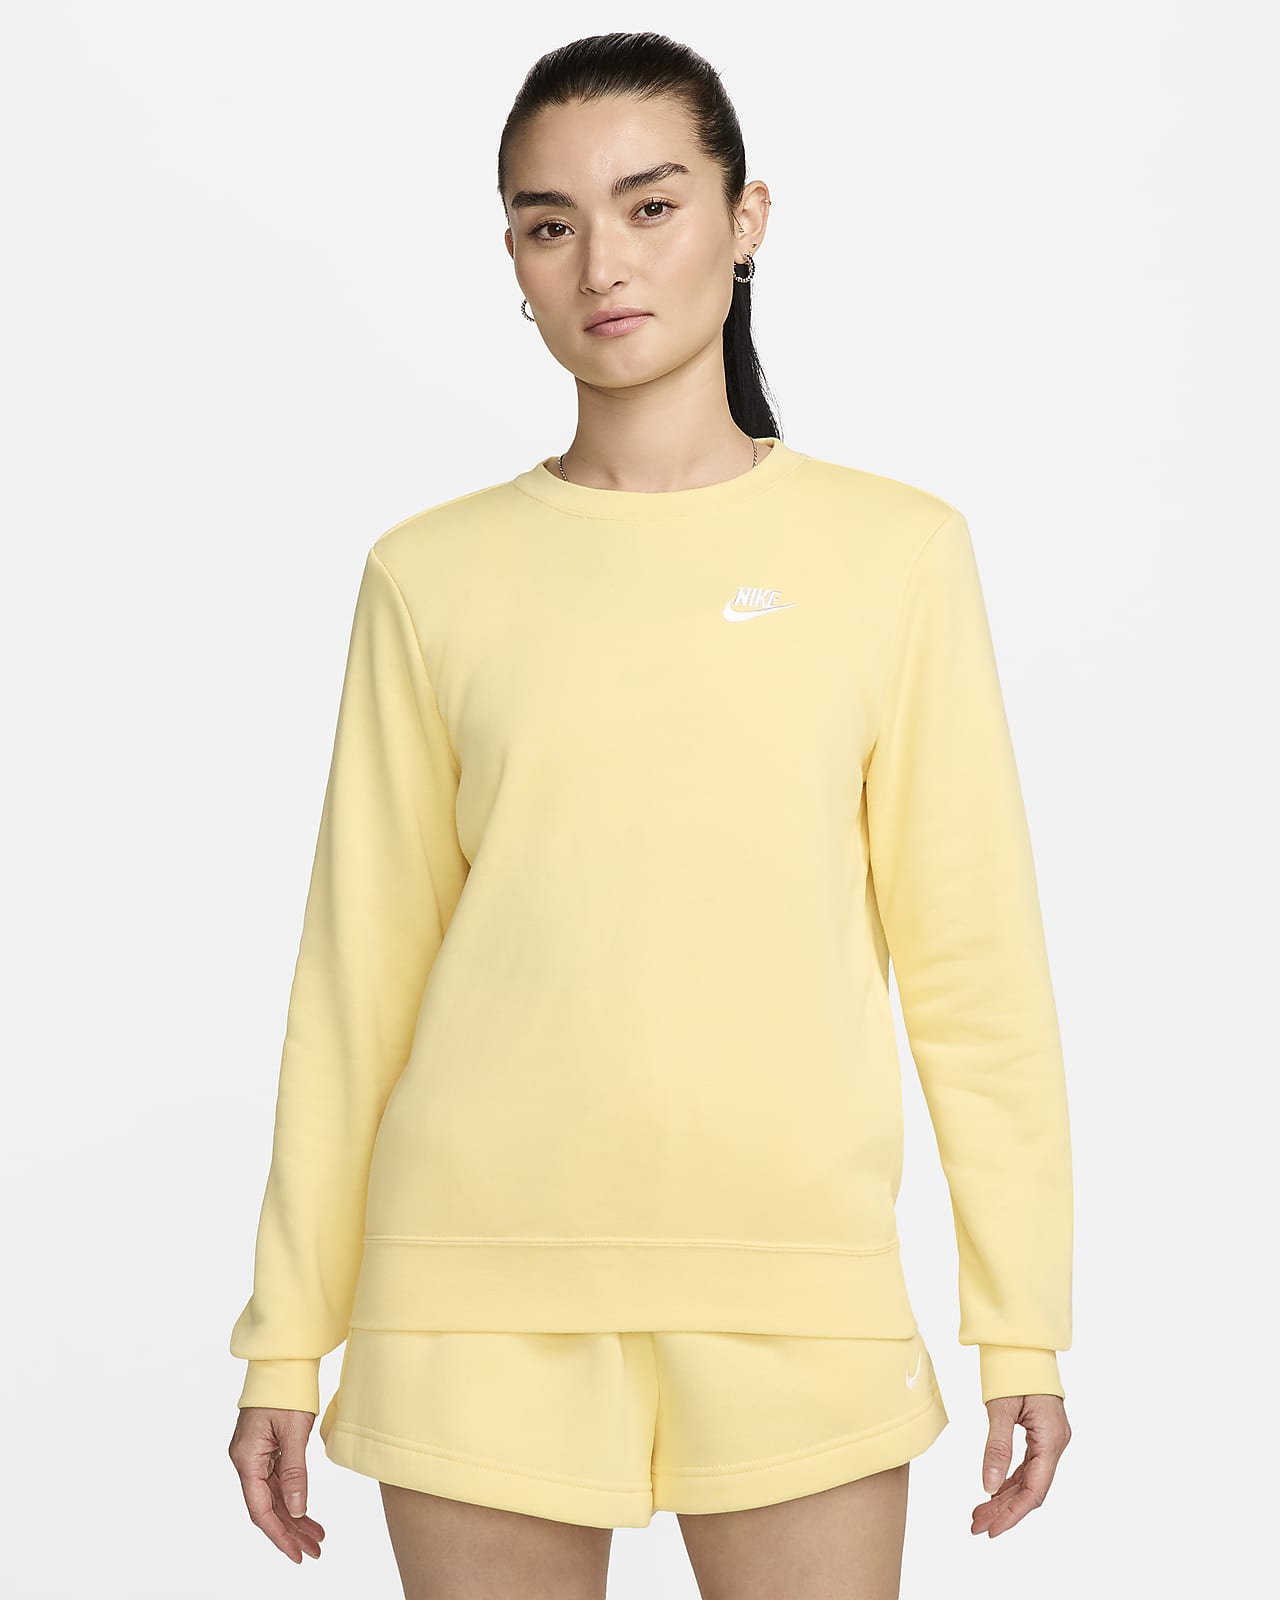 Nike Sportswear Club Fleece Women's Crew-Neck Sweatshirt